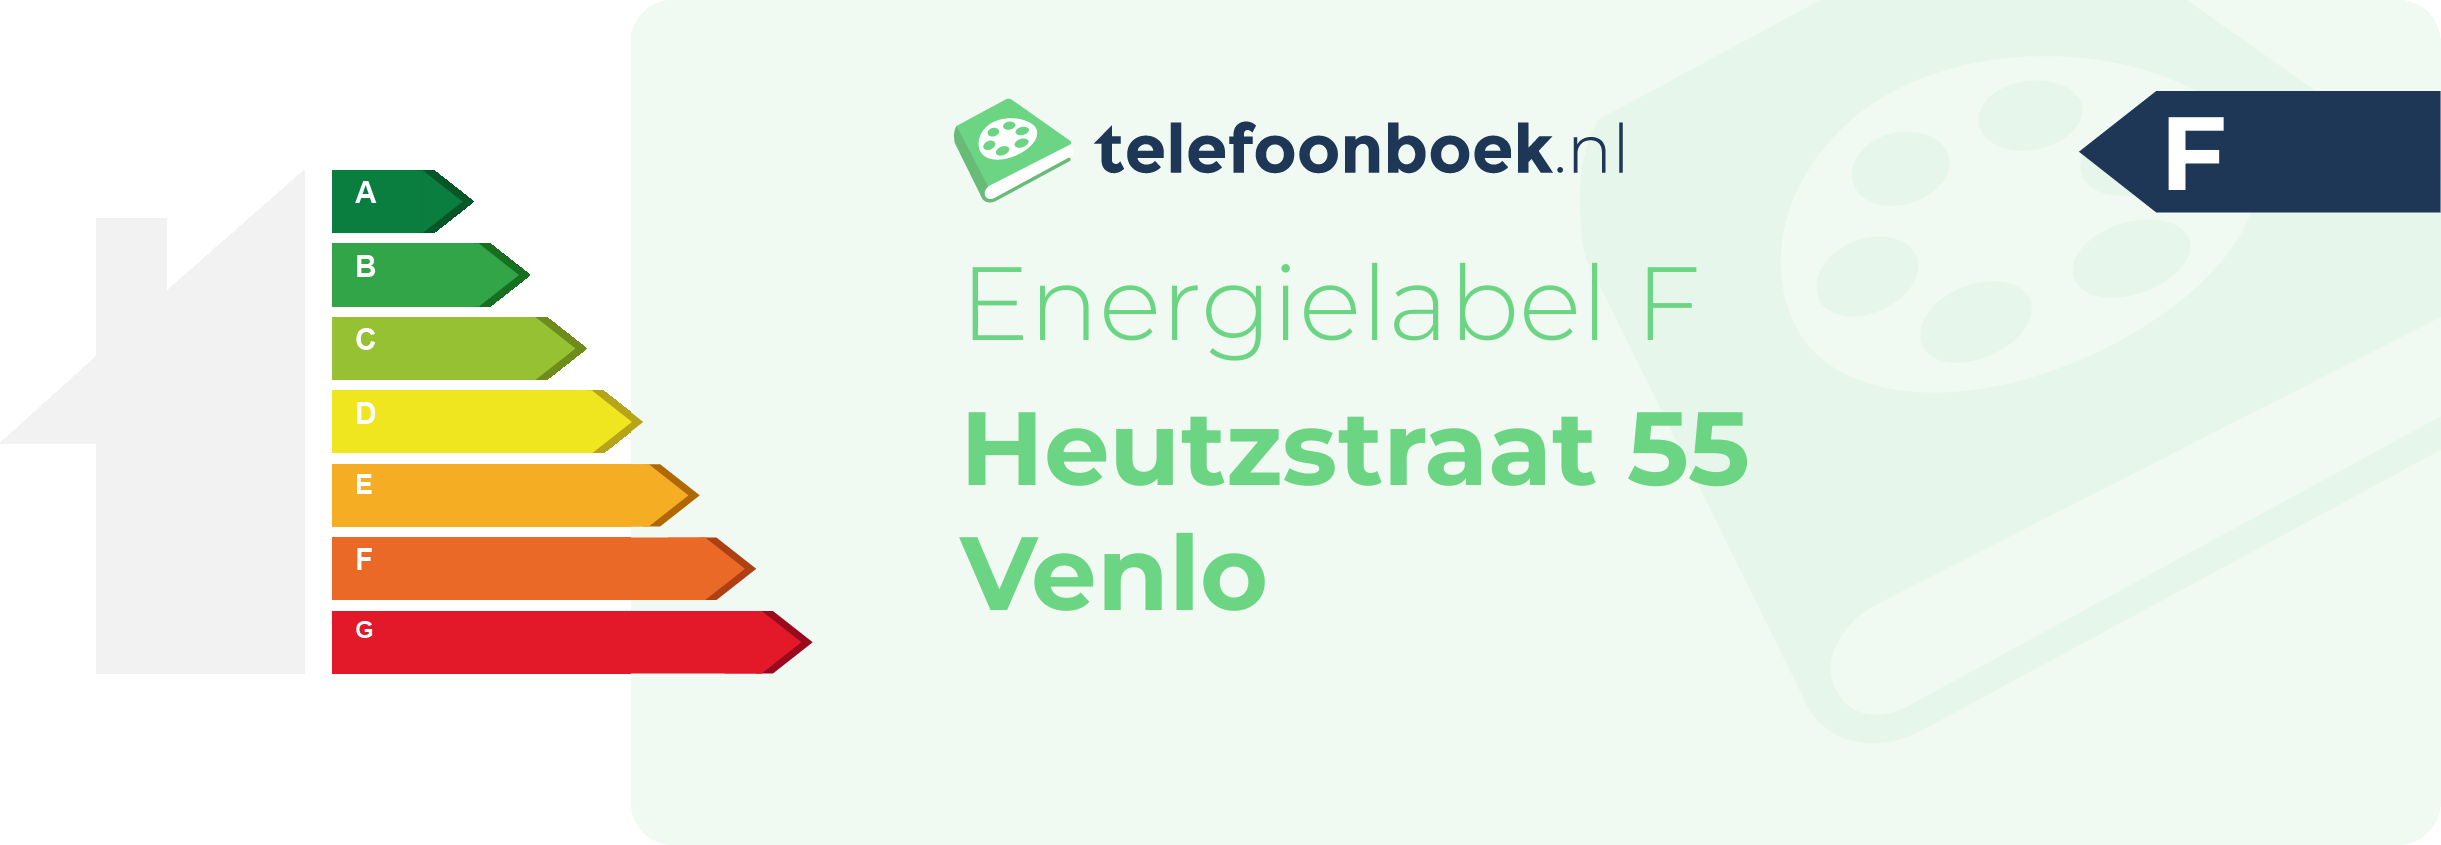 Energielabel Heutzstraat 55 Venlo